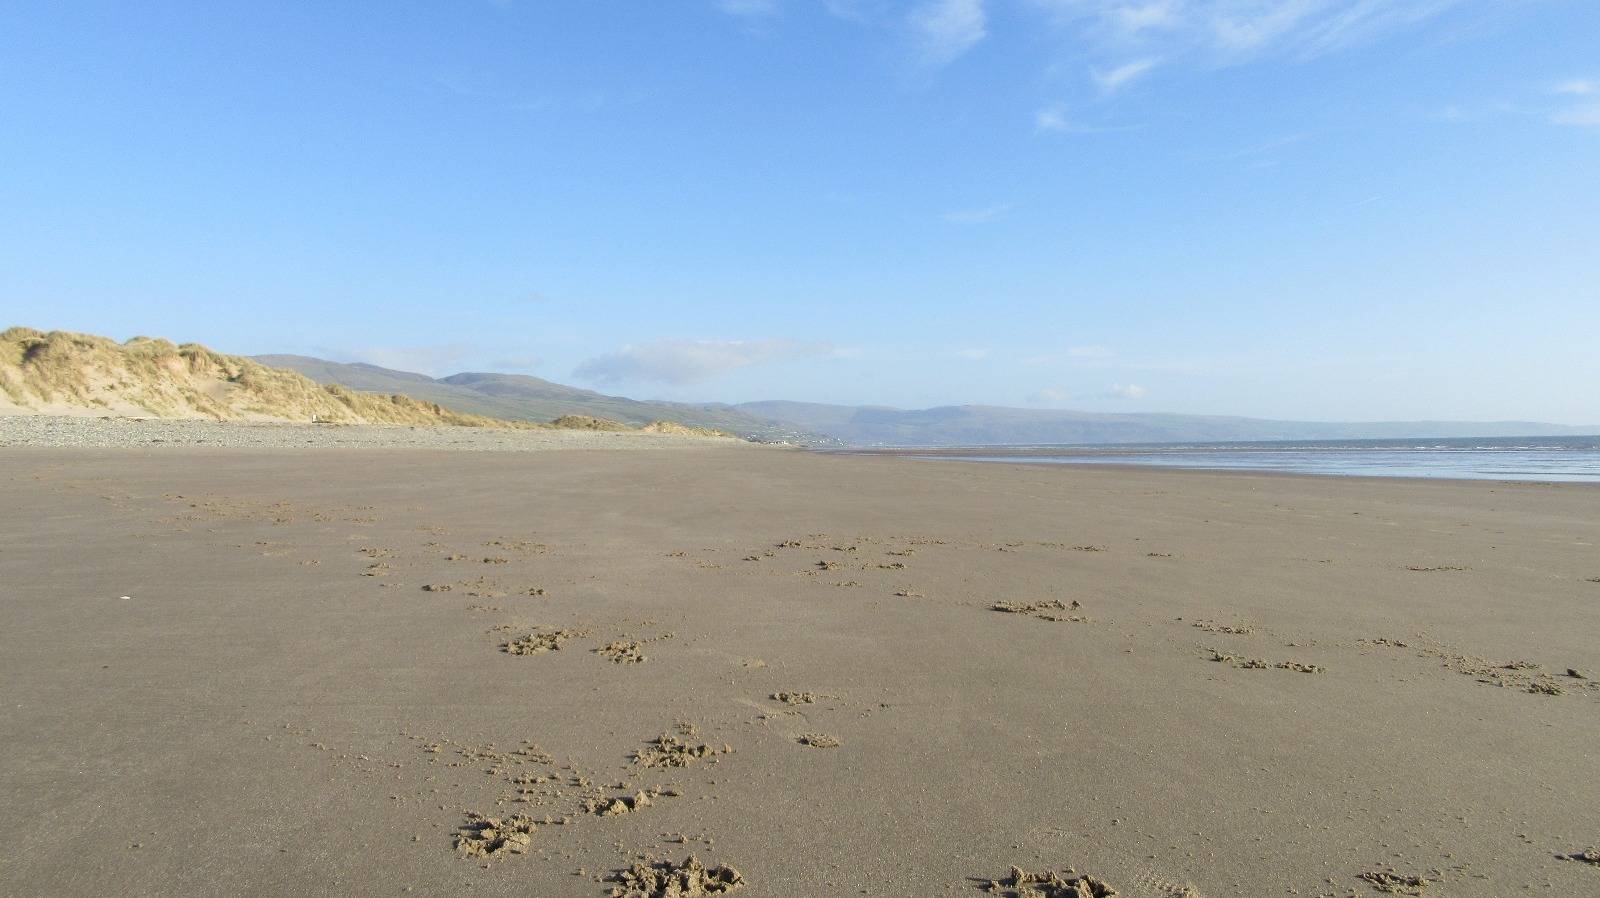 Zdjęcie Morfa Dyffryn beach z powierzchnią turkusowa czysta woda